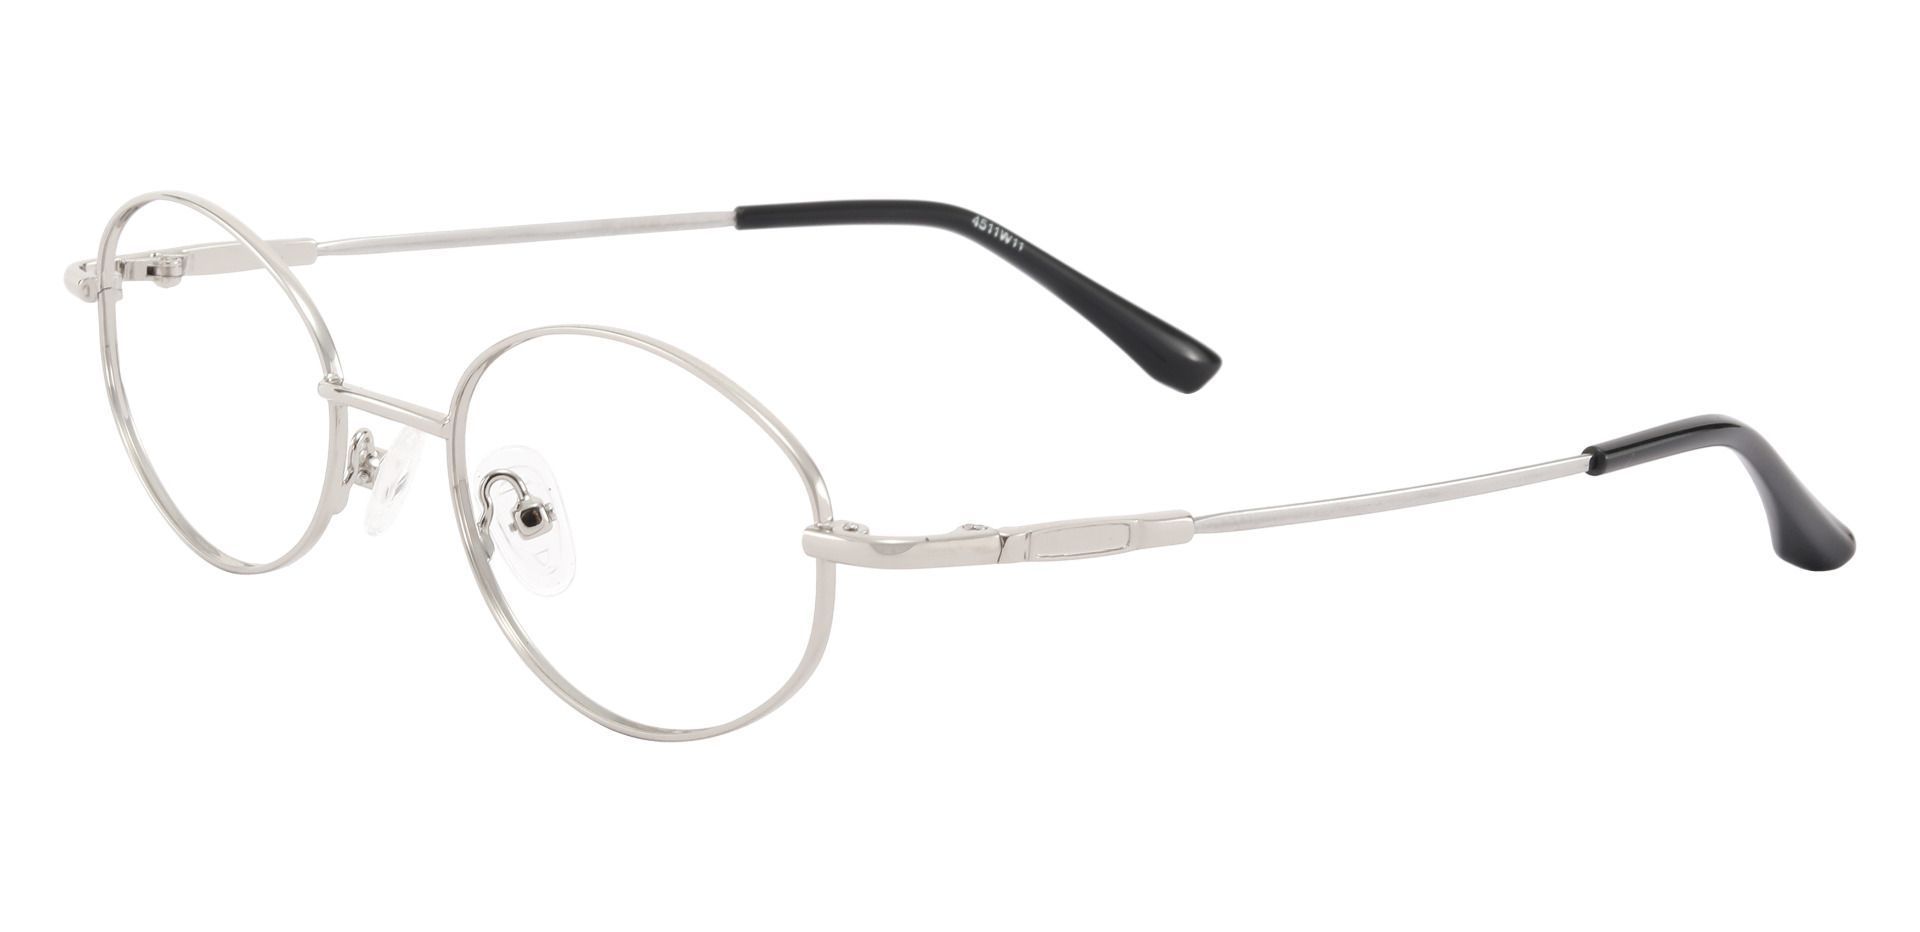 Aline Oval Prescription Glasses - Silver